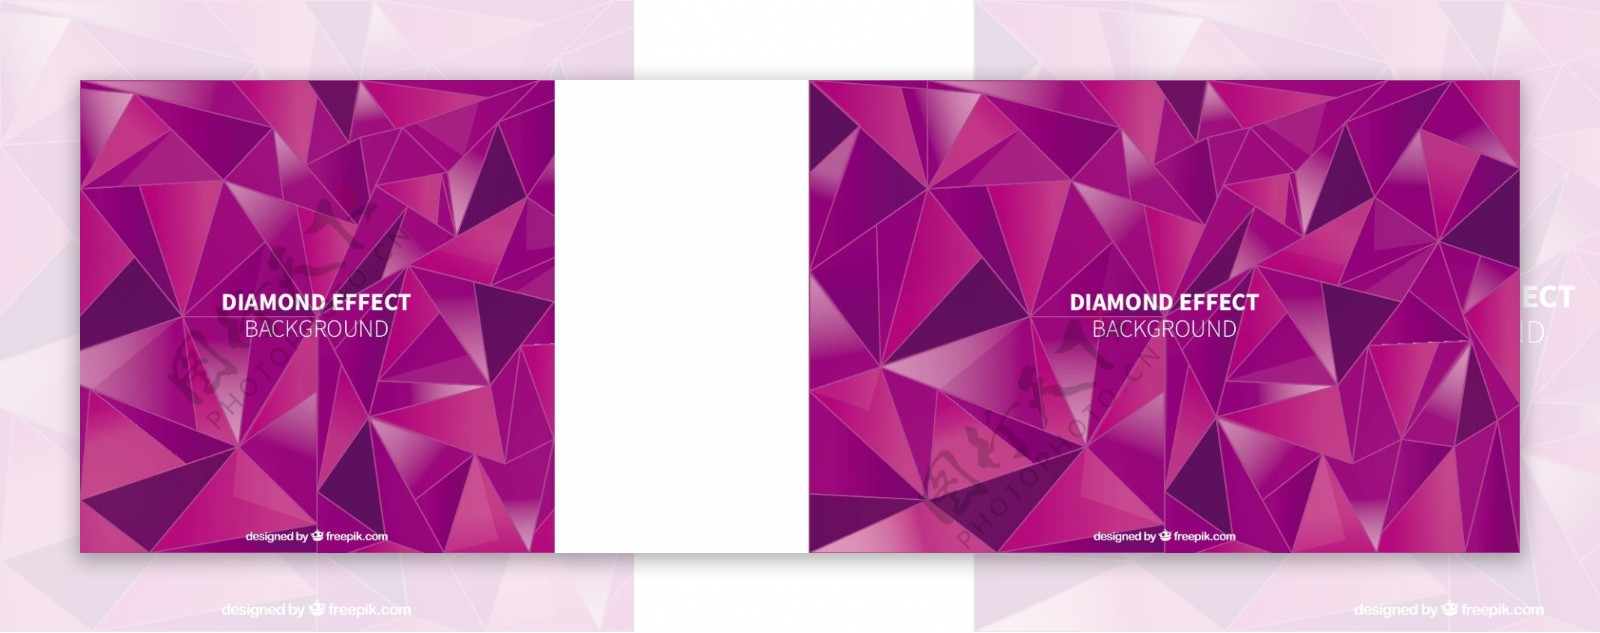 紫色背景与钻石效果